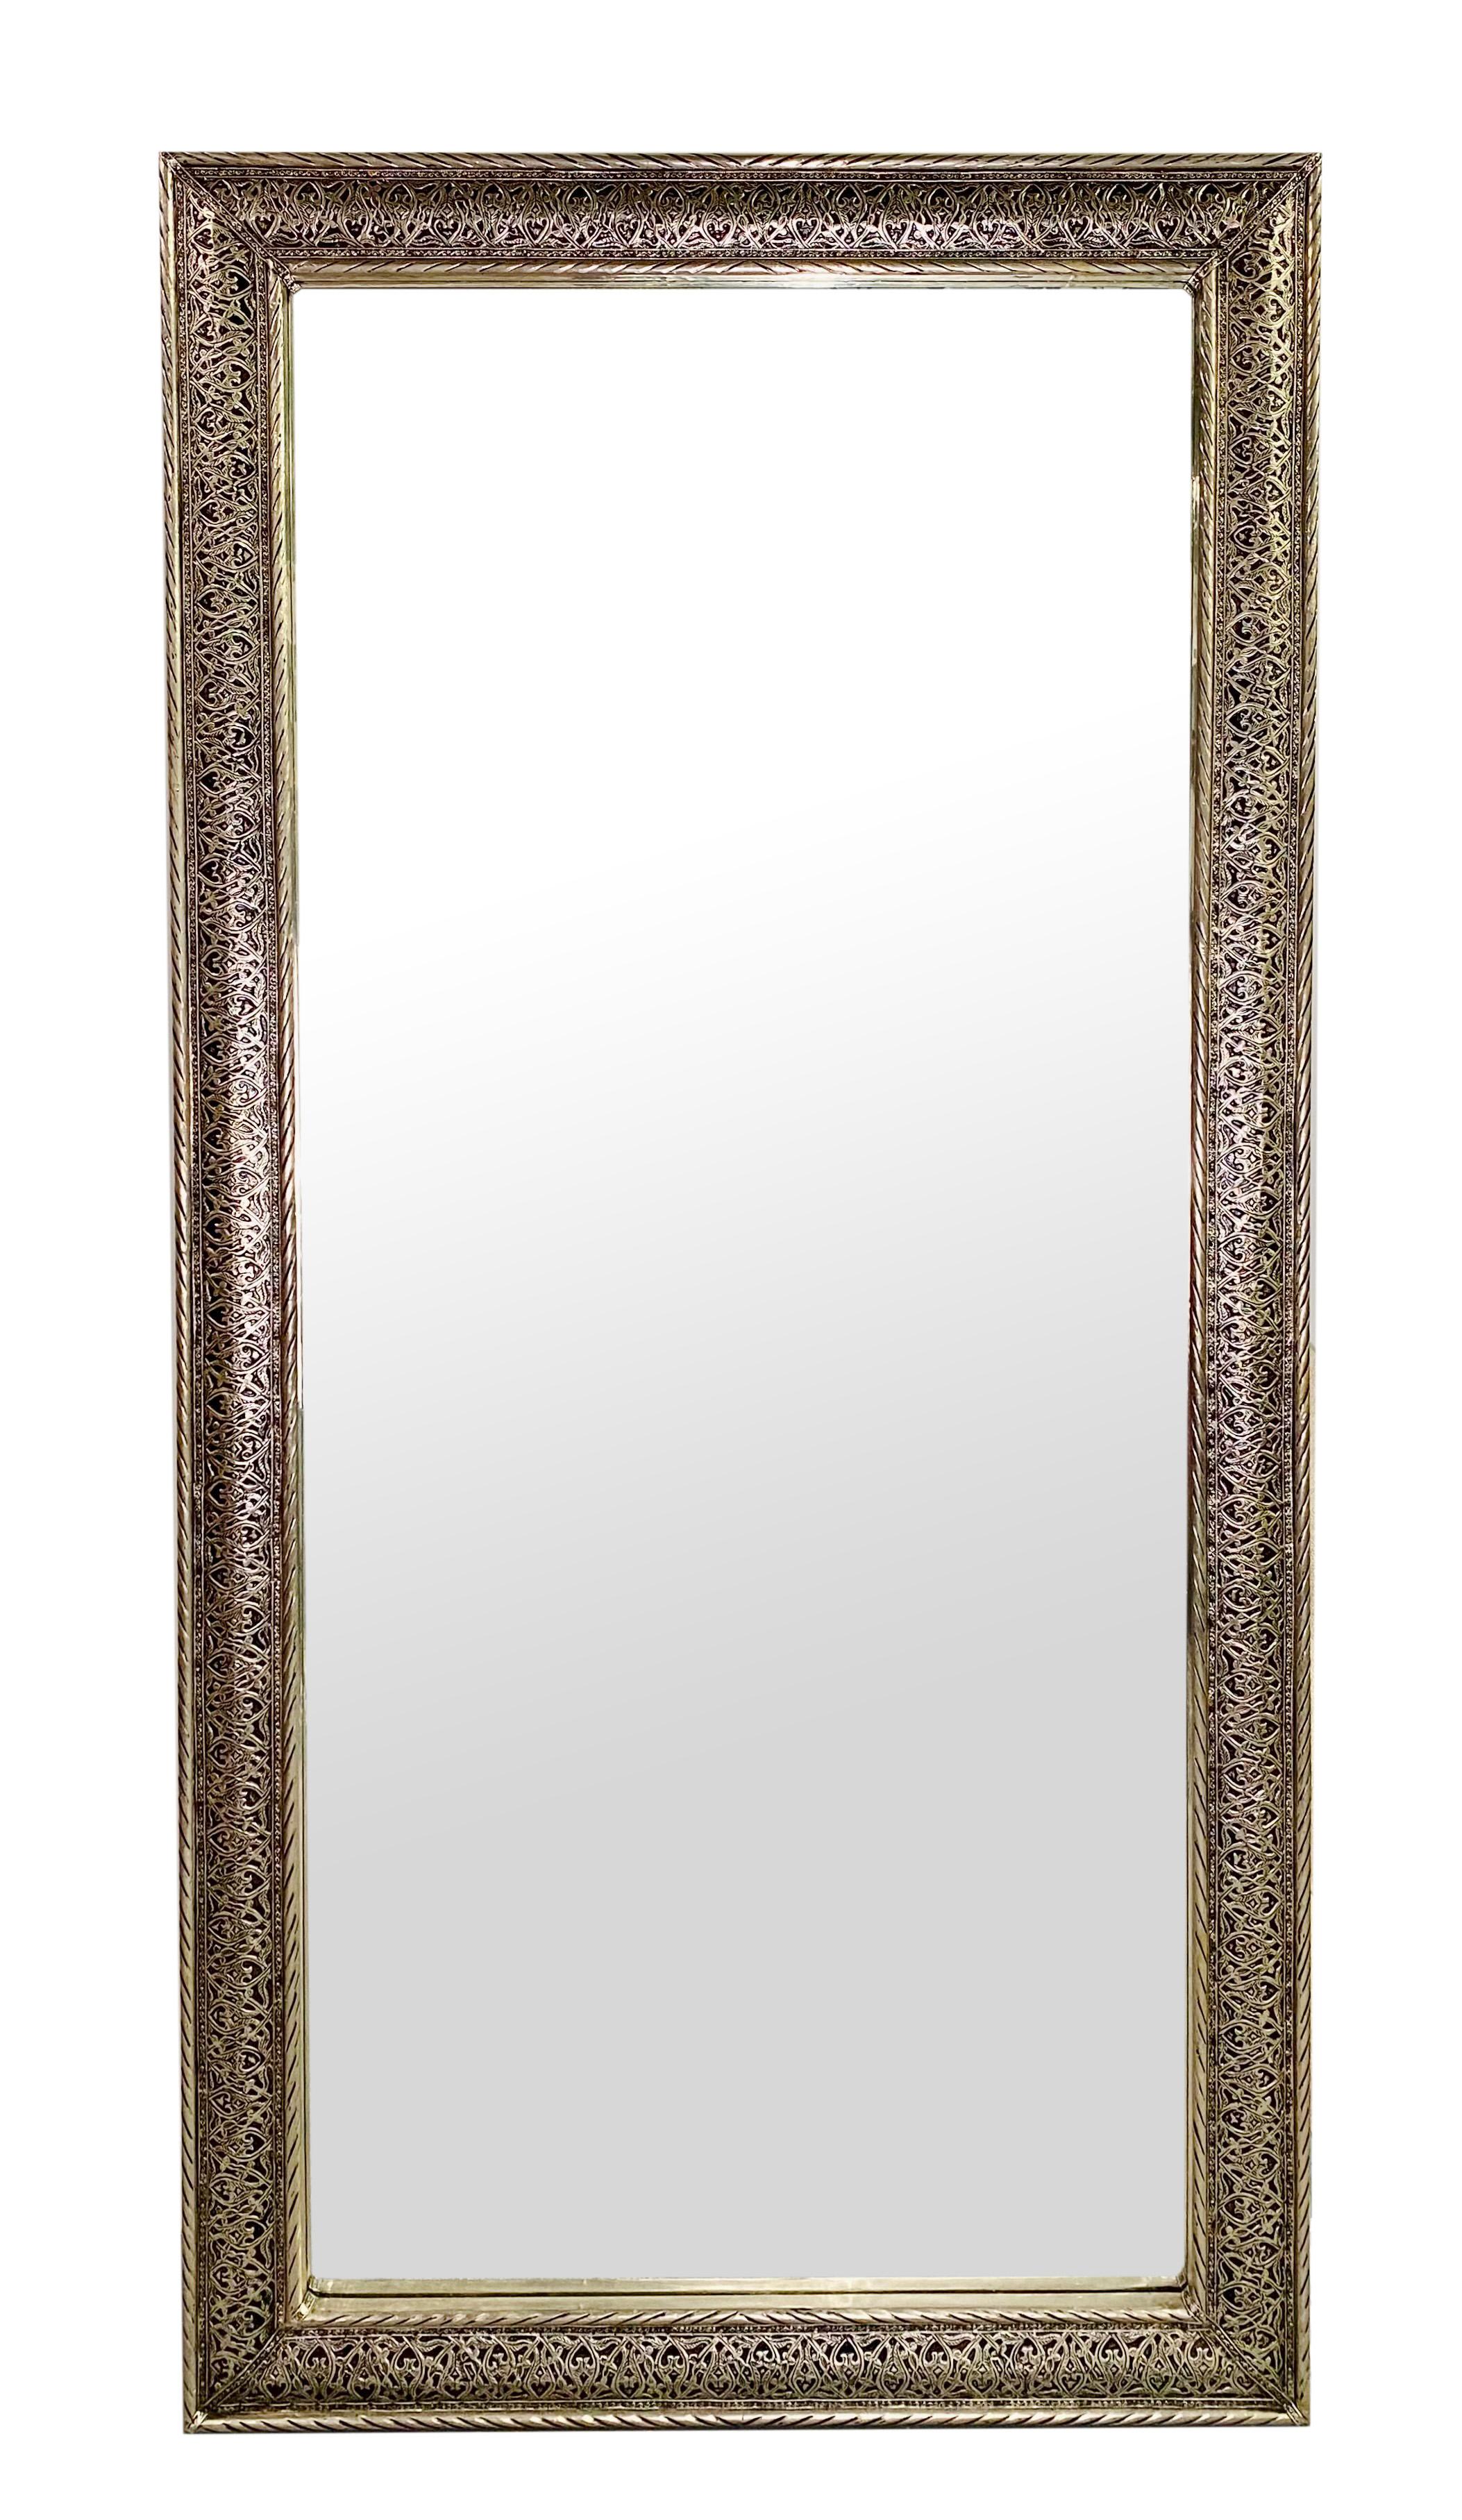 Paire de grands miroirs de style Hollywood Regency. Le cadre des miroirs est finement réalisé à la main en filigrane à l'aide d'un matériau en laiton argenté de la meilleure qualité. Les miroirs peuvent être présentés comme des miroirs muraux, des